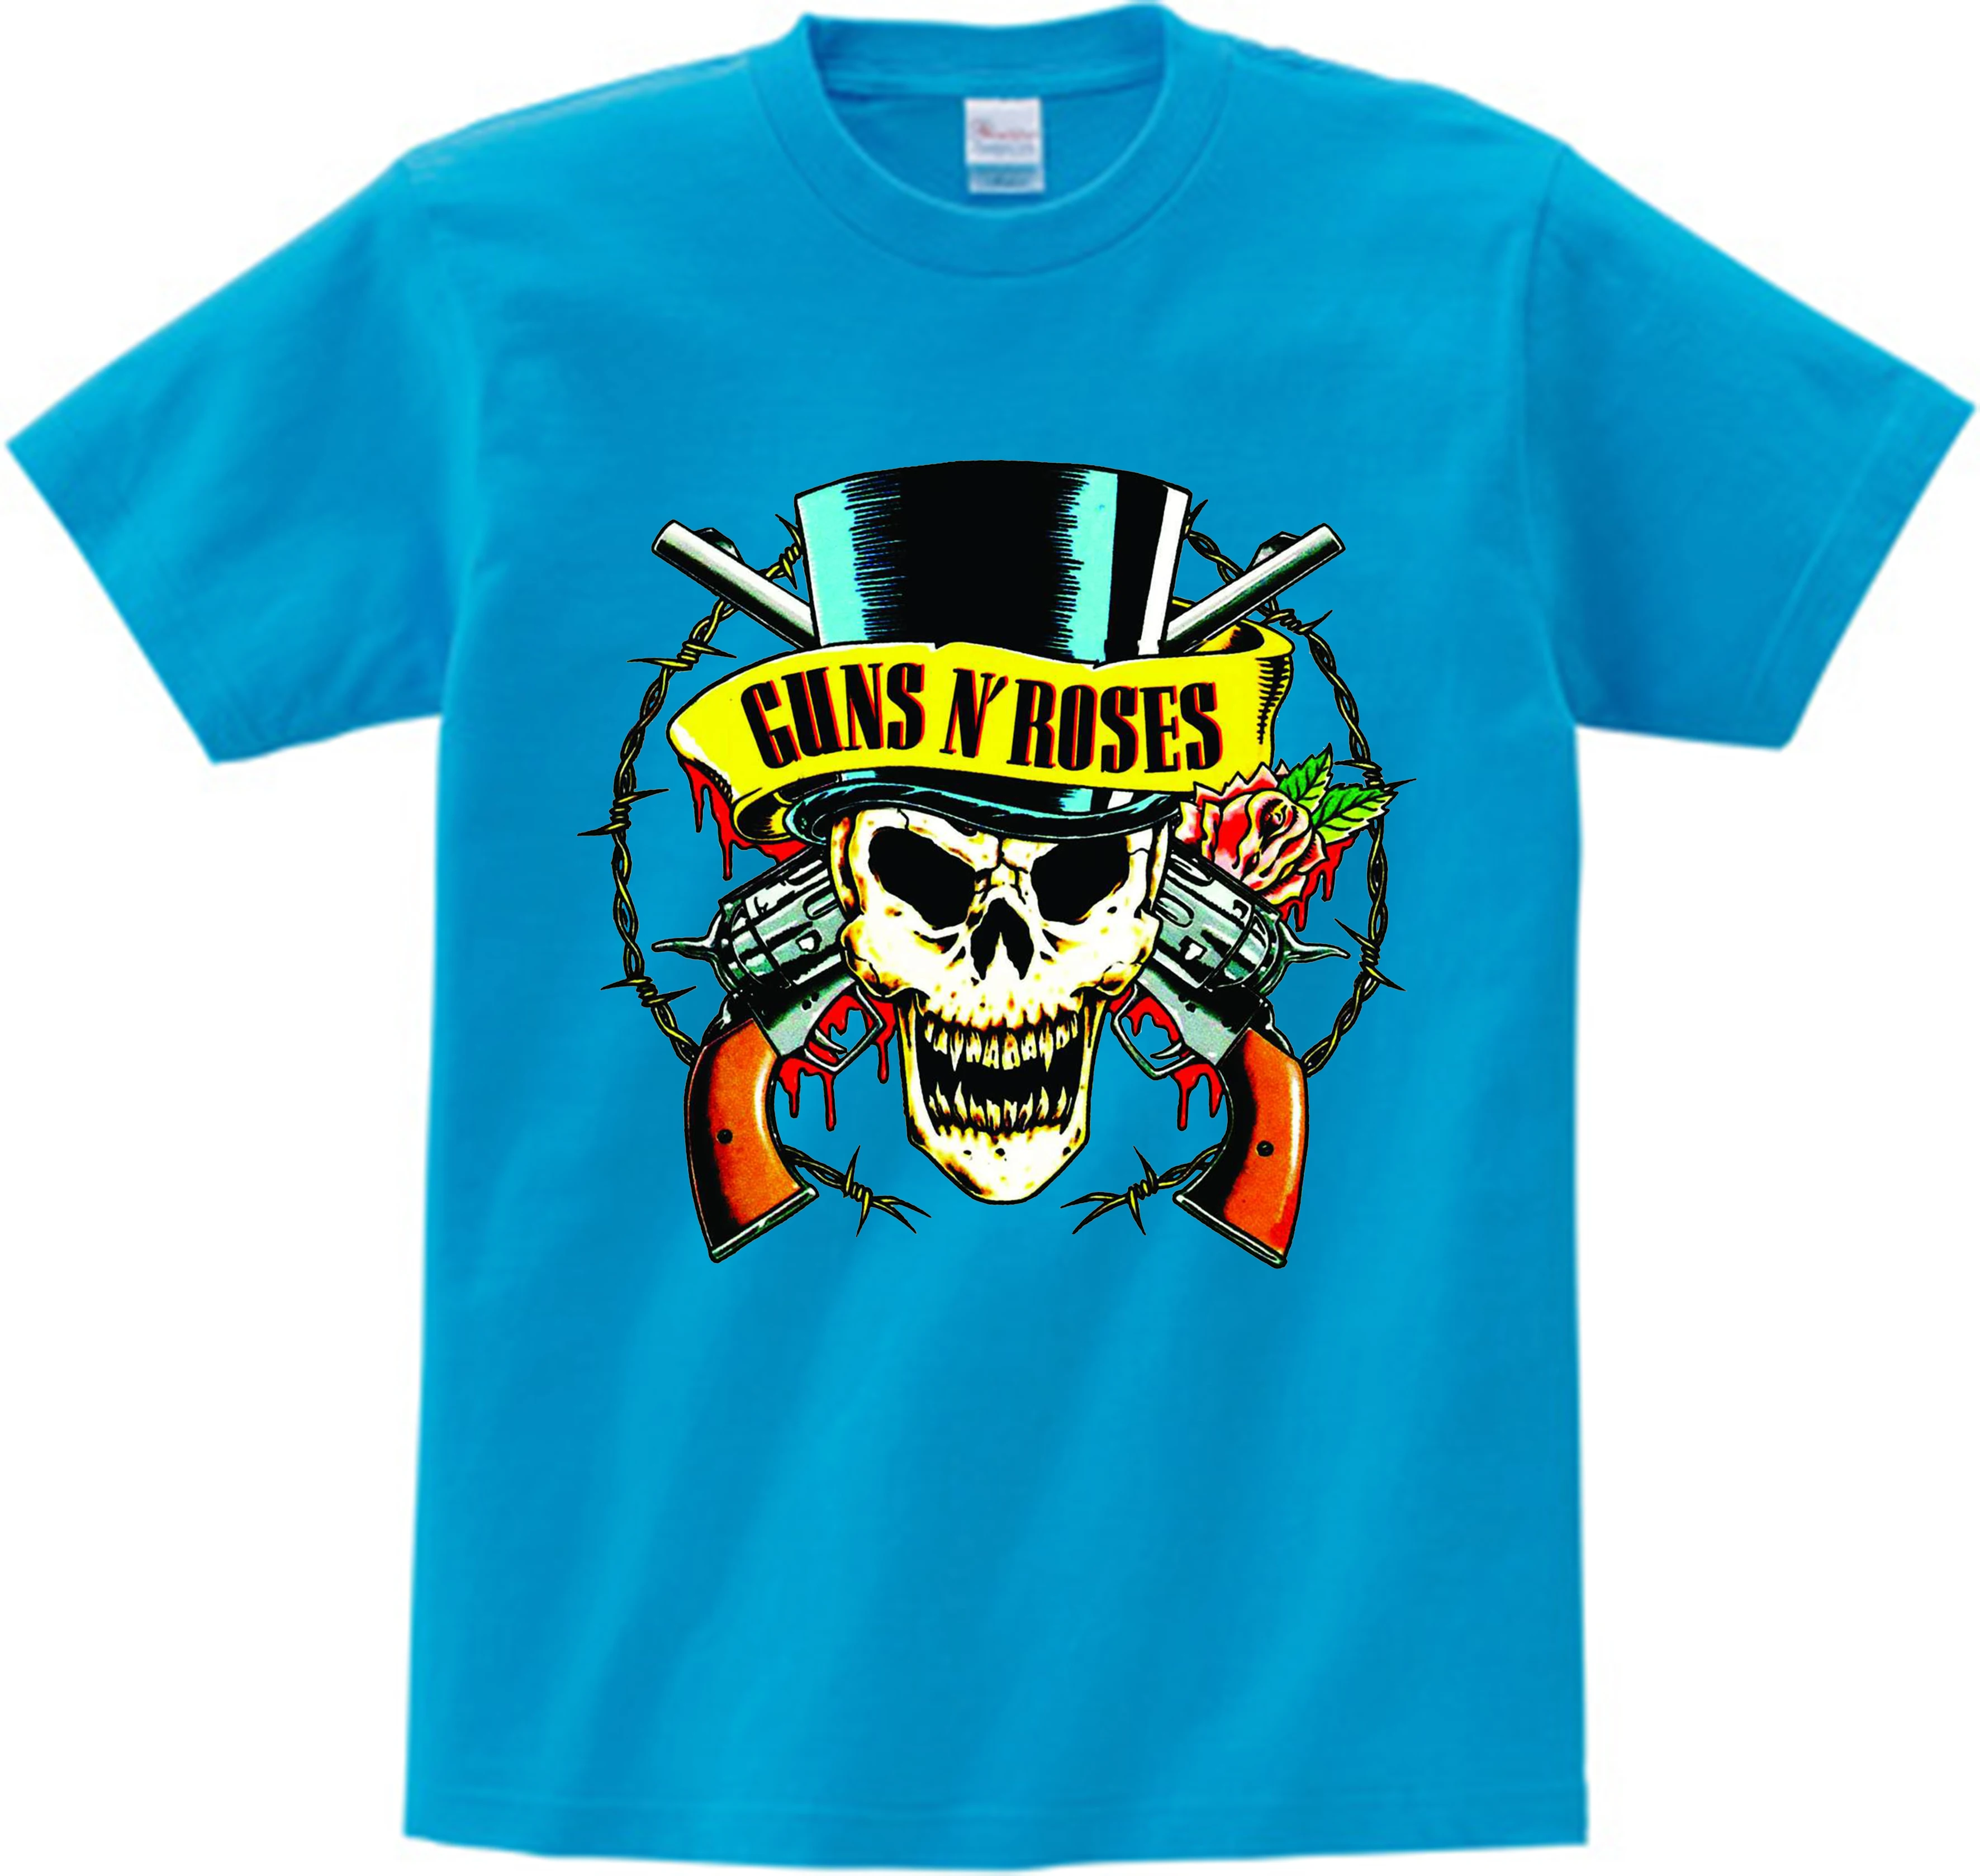 Детская модная футболка с надписью Slash Rock Band Gun N Roses детские летние топы 2021